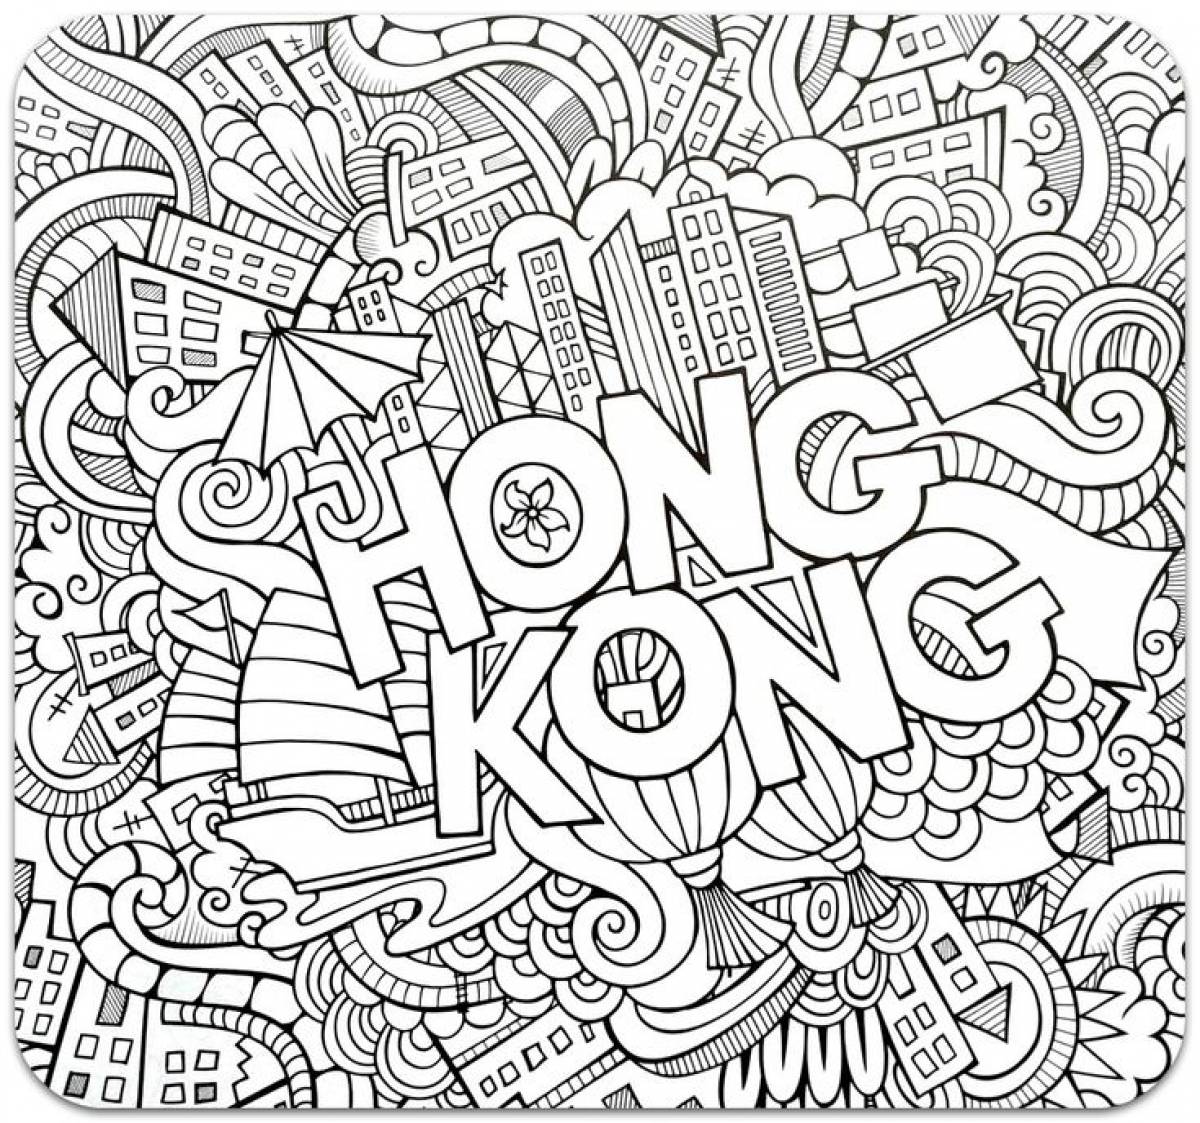 Antistress with hong kong inscriptions